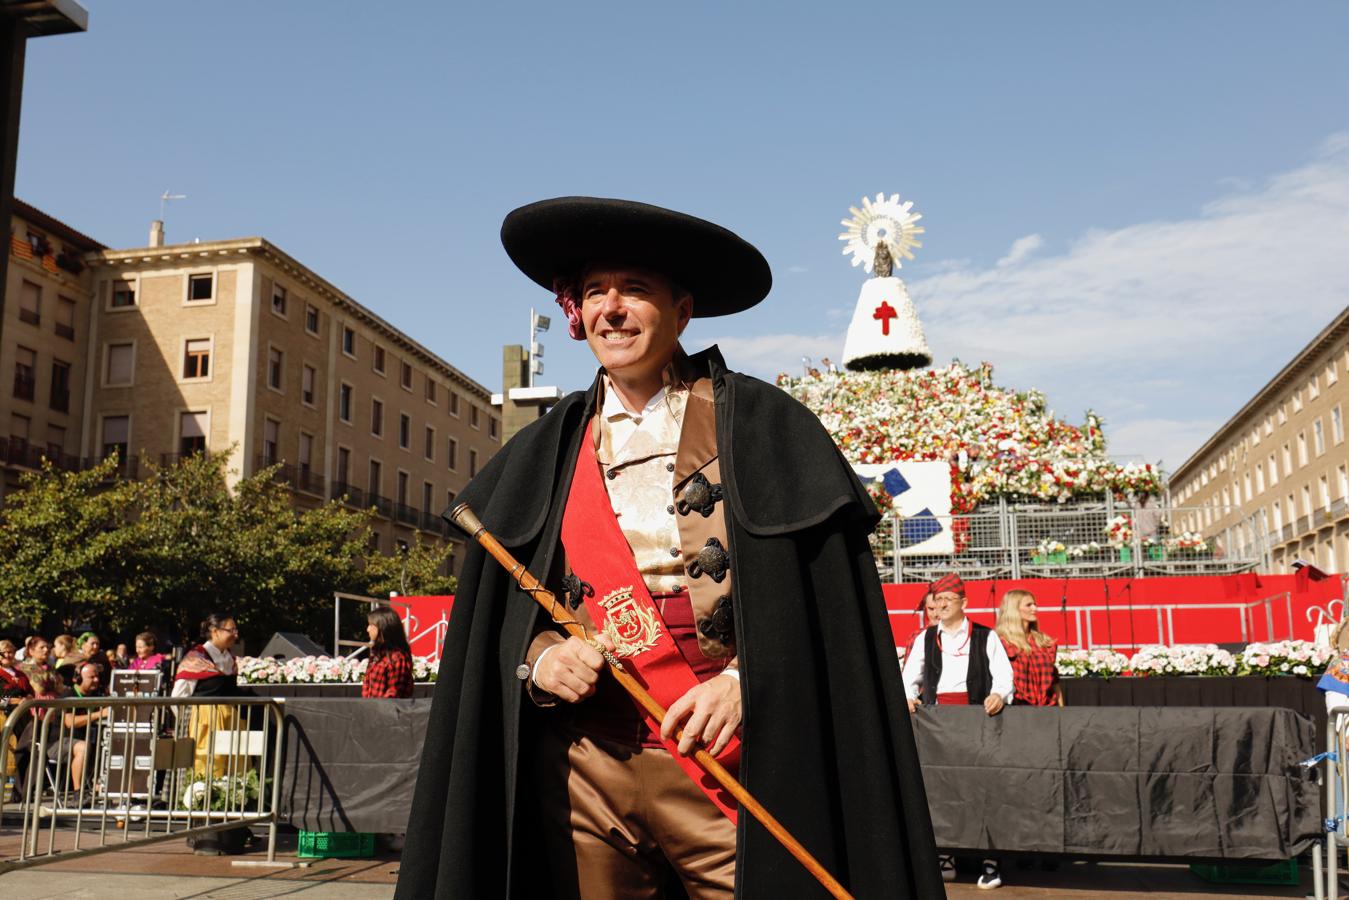 El alcalde de Zaragoza, con un traje típico del siglo XVIII. El alcalde de Zaragoza, Jorge Azcón, ha participado en la Ofrenda ataviado con un traje que sigue el diseo de los que vestían los miembros de la Corporación municipal en el siglo XVIII